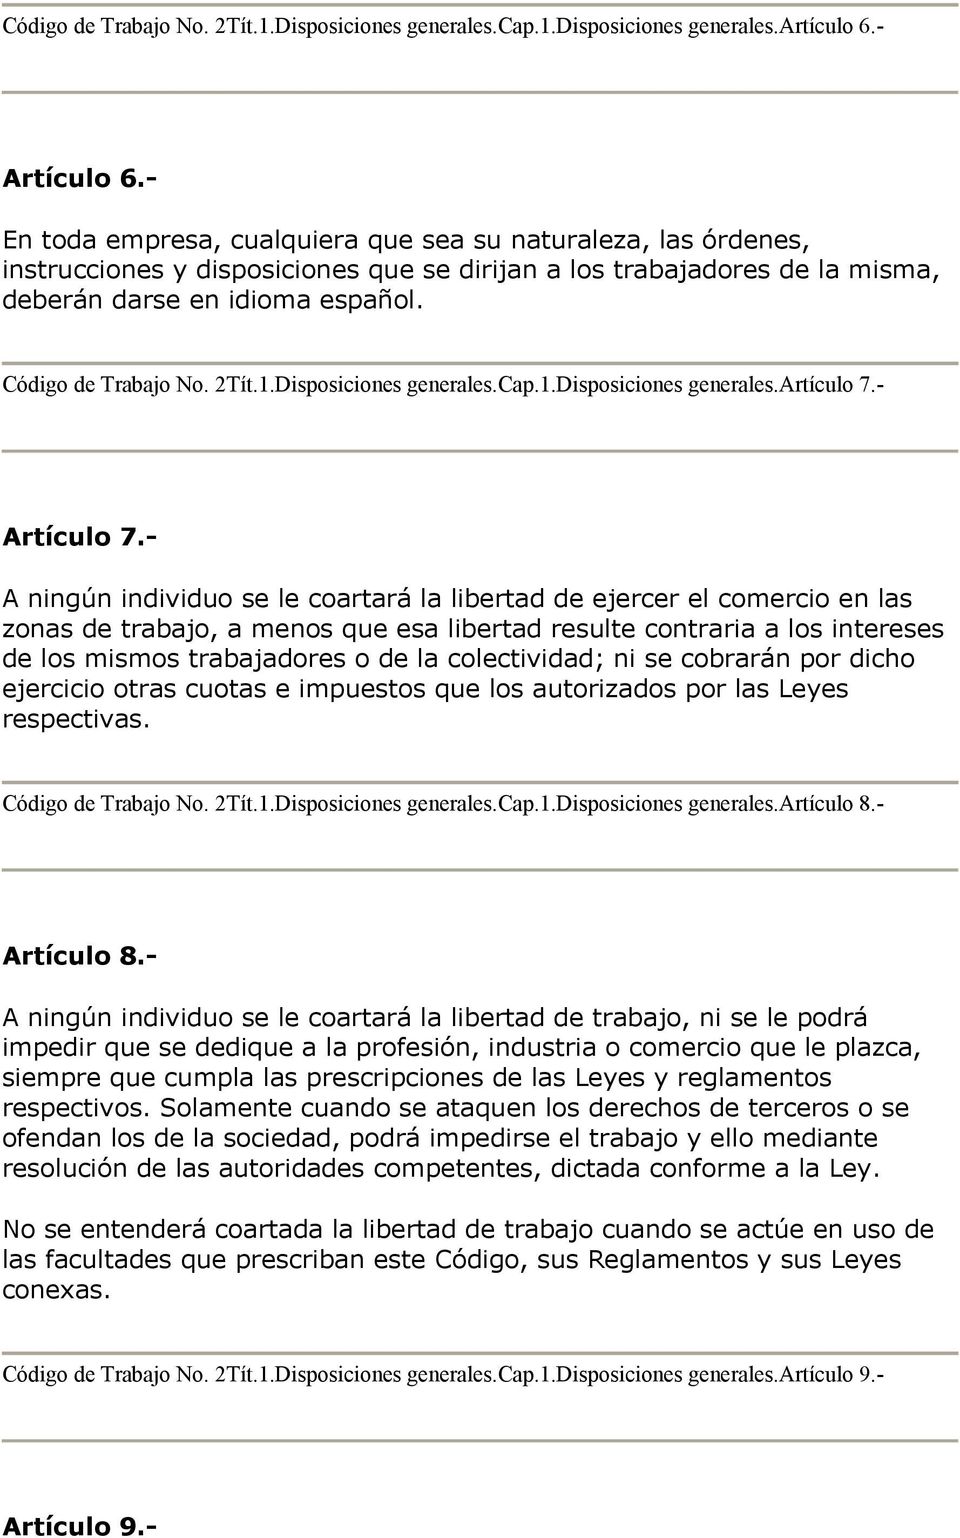 2Tít.1.Disposiciones generales.cap.1.disposiciones generales.artículo 7.- Artículo 7.